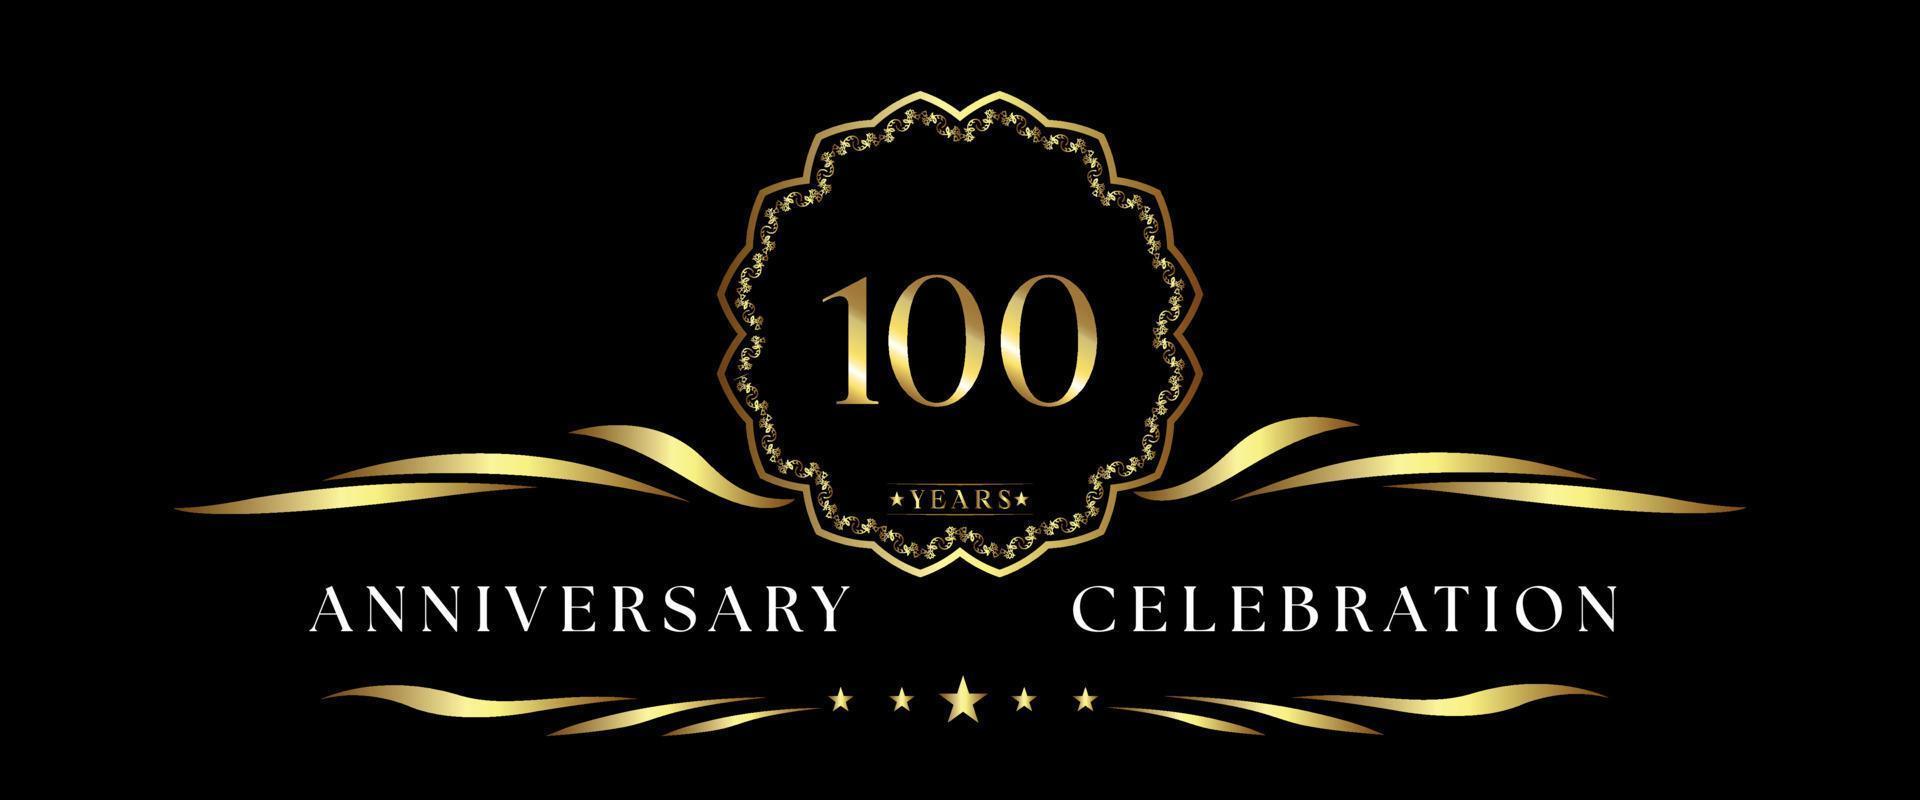 Celebrazione dell'anniversario di 100 anni con cornice decorativa dorata isolata su sfondo nero. disegno vettoriale per biglietto di auguri, festa di compleanno, matrimonio, festa evento, cerimonia. Logo dell'anniversario di 100 anni.